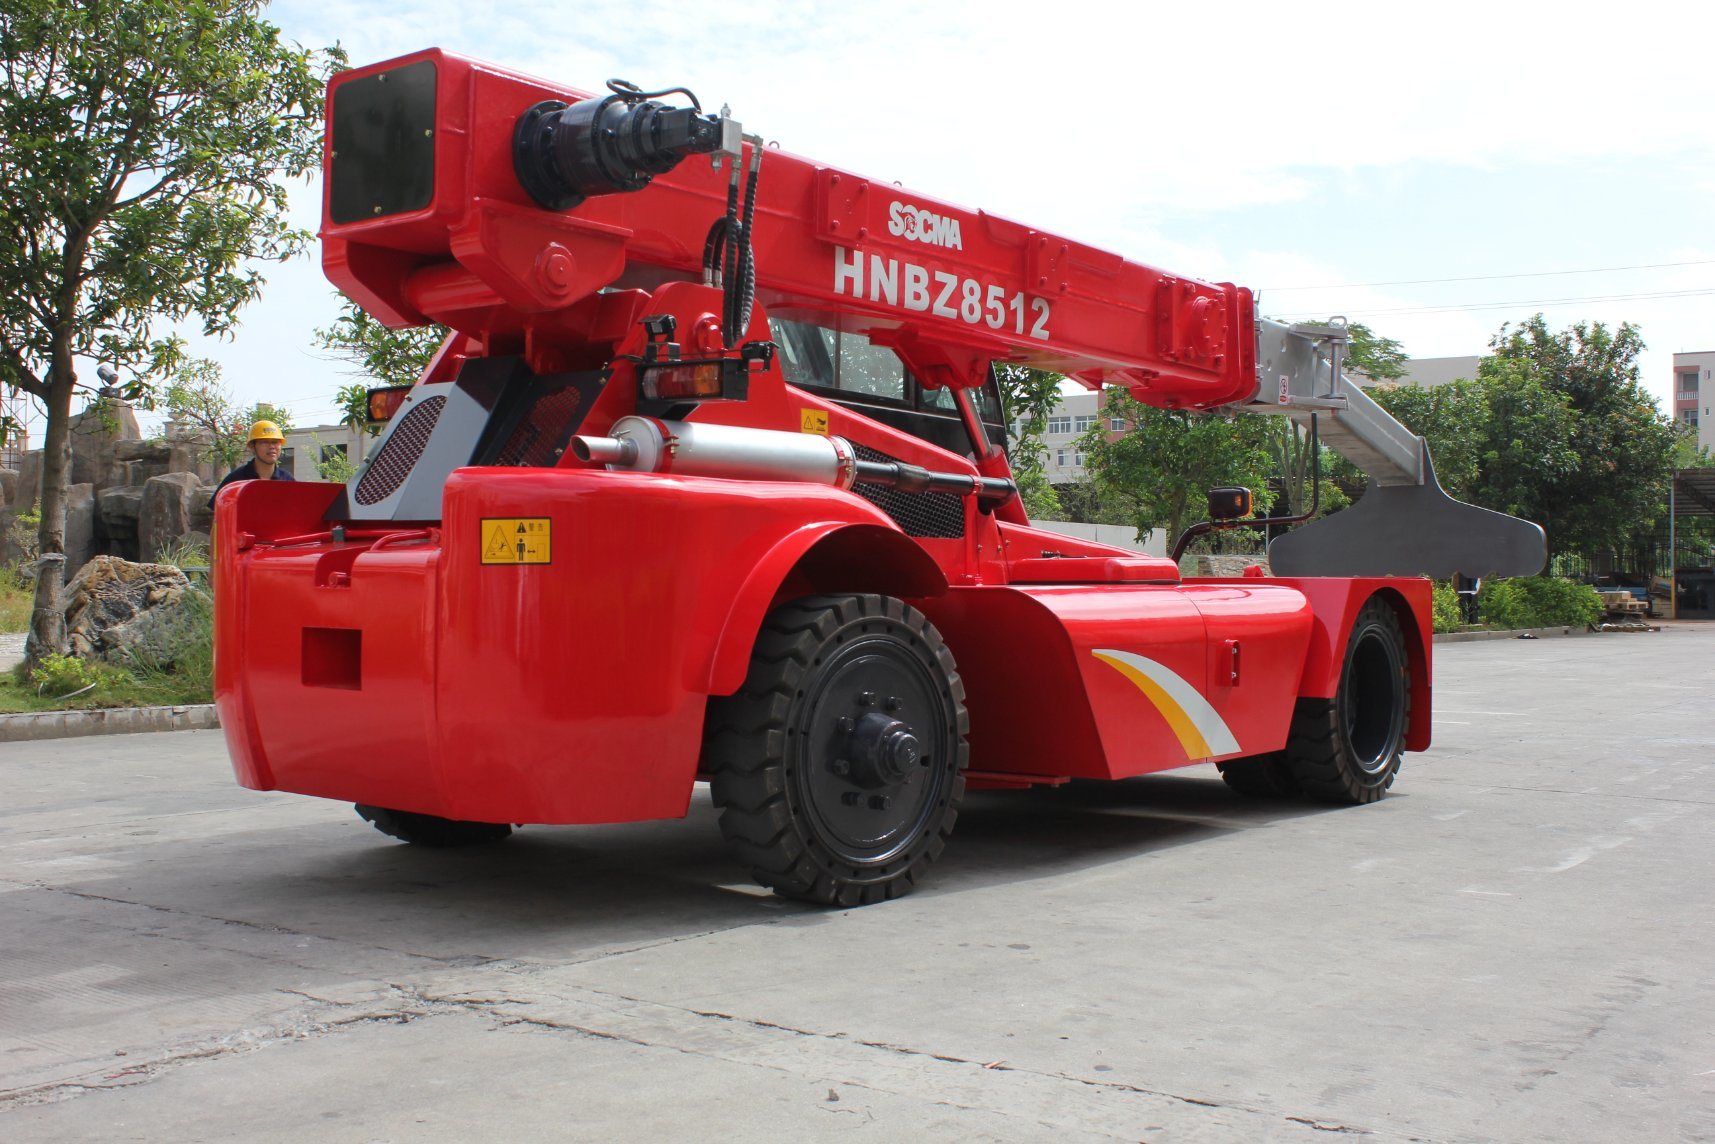 
                Brand New Socma Hnbz8512 de haute qualité chariot élévateur à fourche télescopique
            